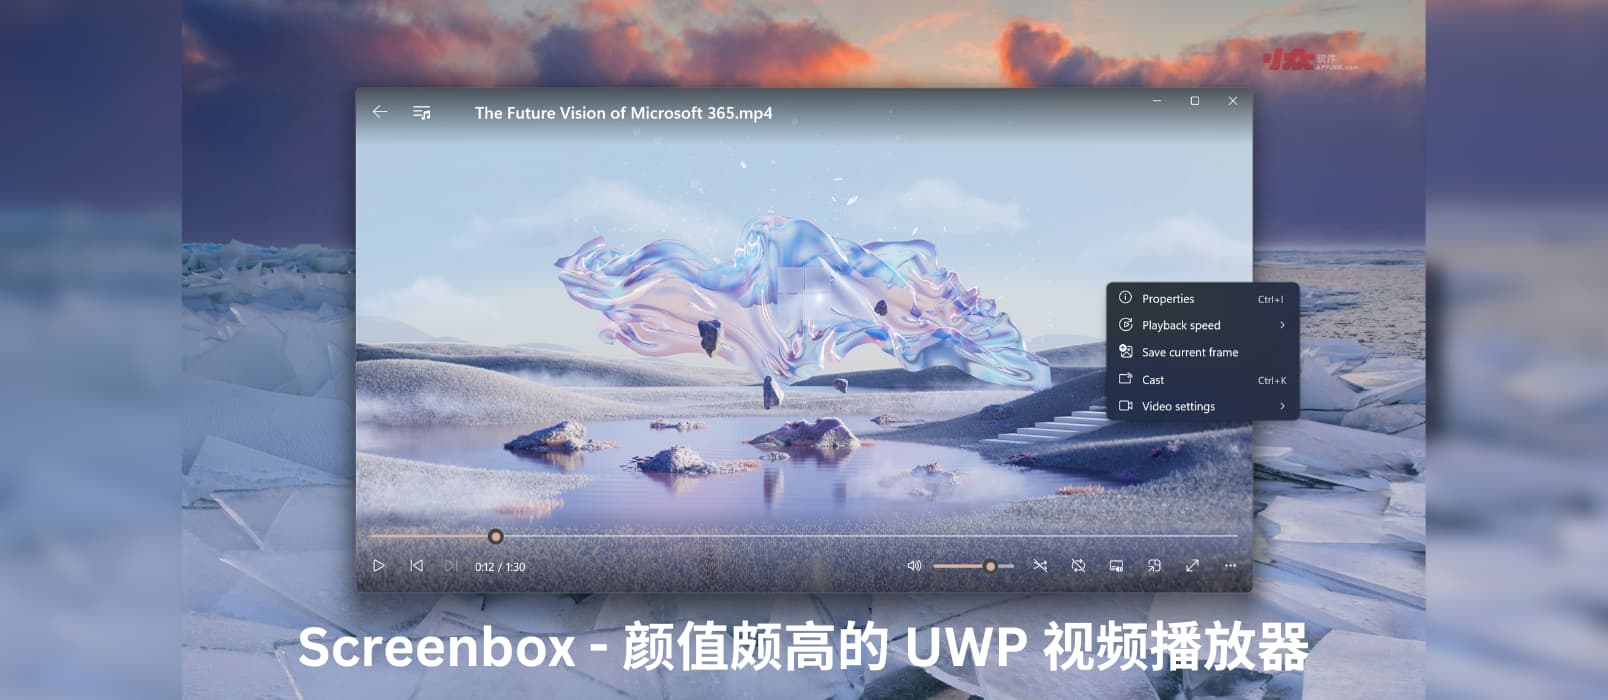 Screenbox - 基于 VLC，颜值颇高的开源、免费 UWP 视频播放器[Windows/Xbox]